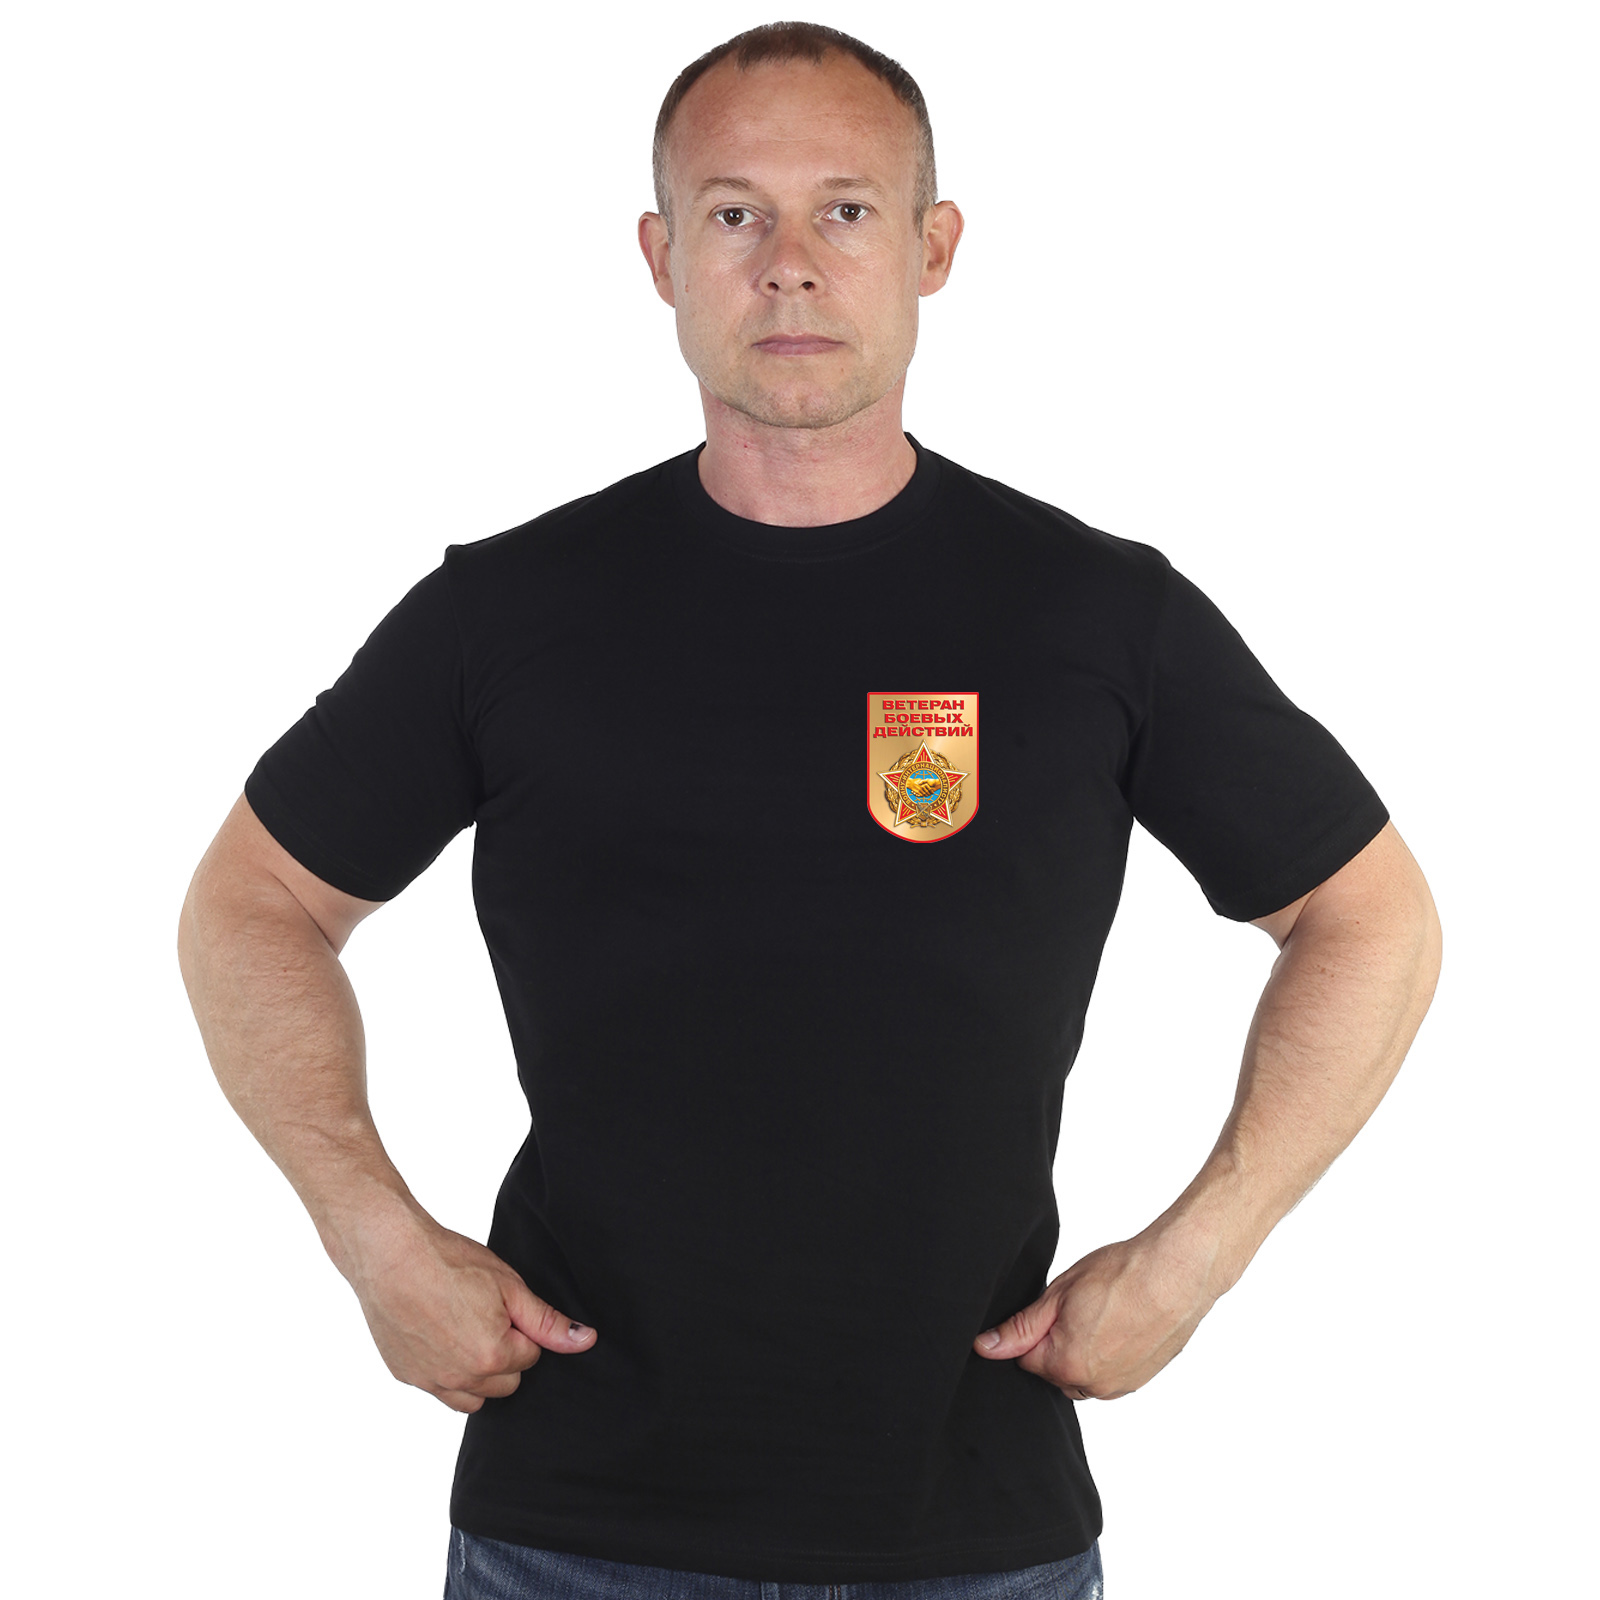 Чёрная футболка с термотрансфером "Ветеран боевых действий" 